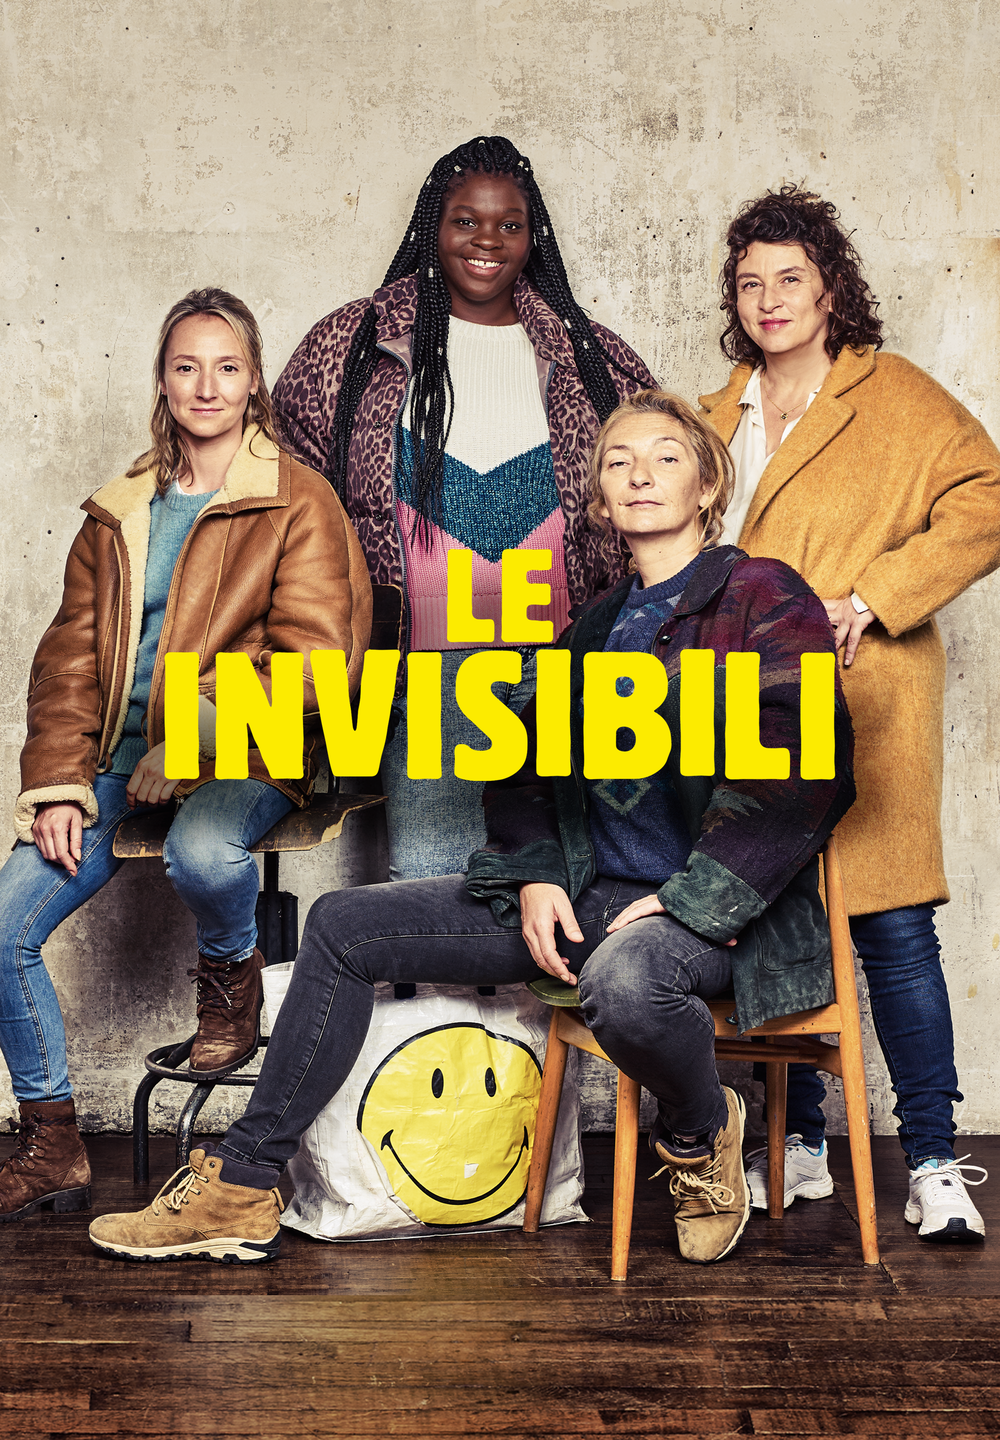 Le invisibili [HD] (2019)